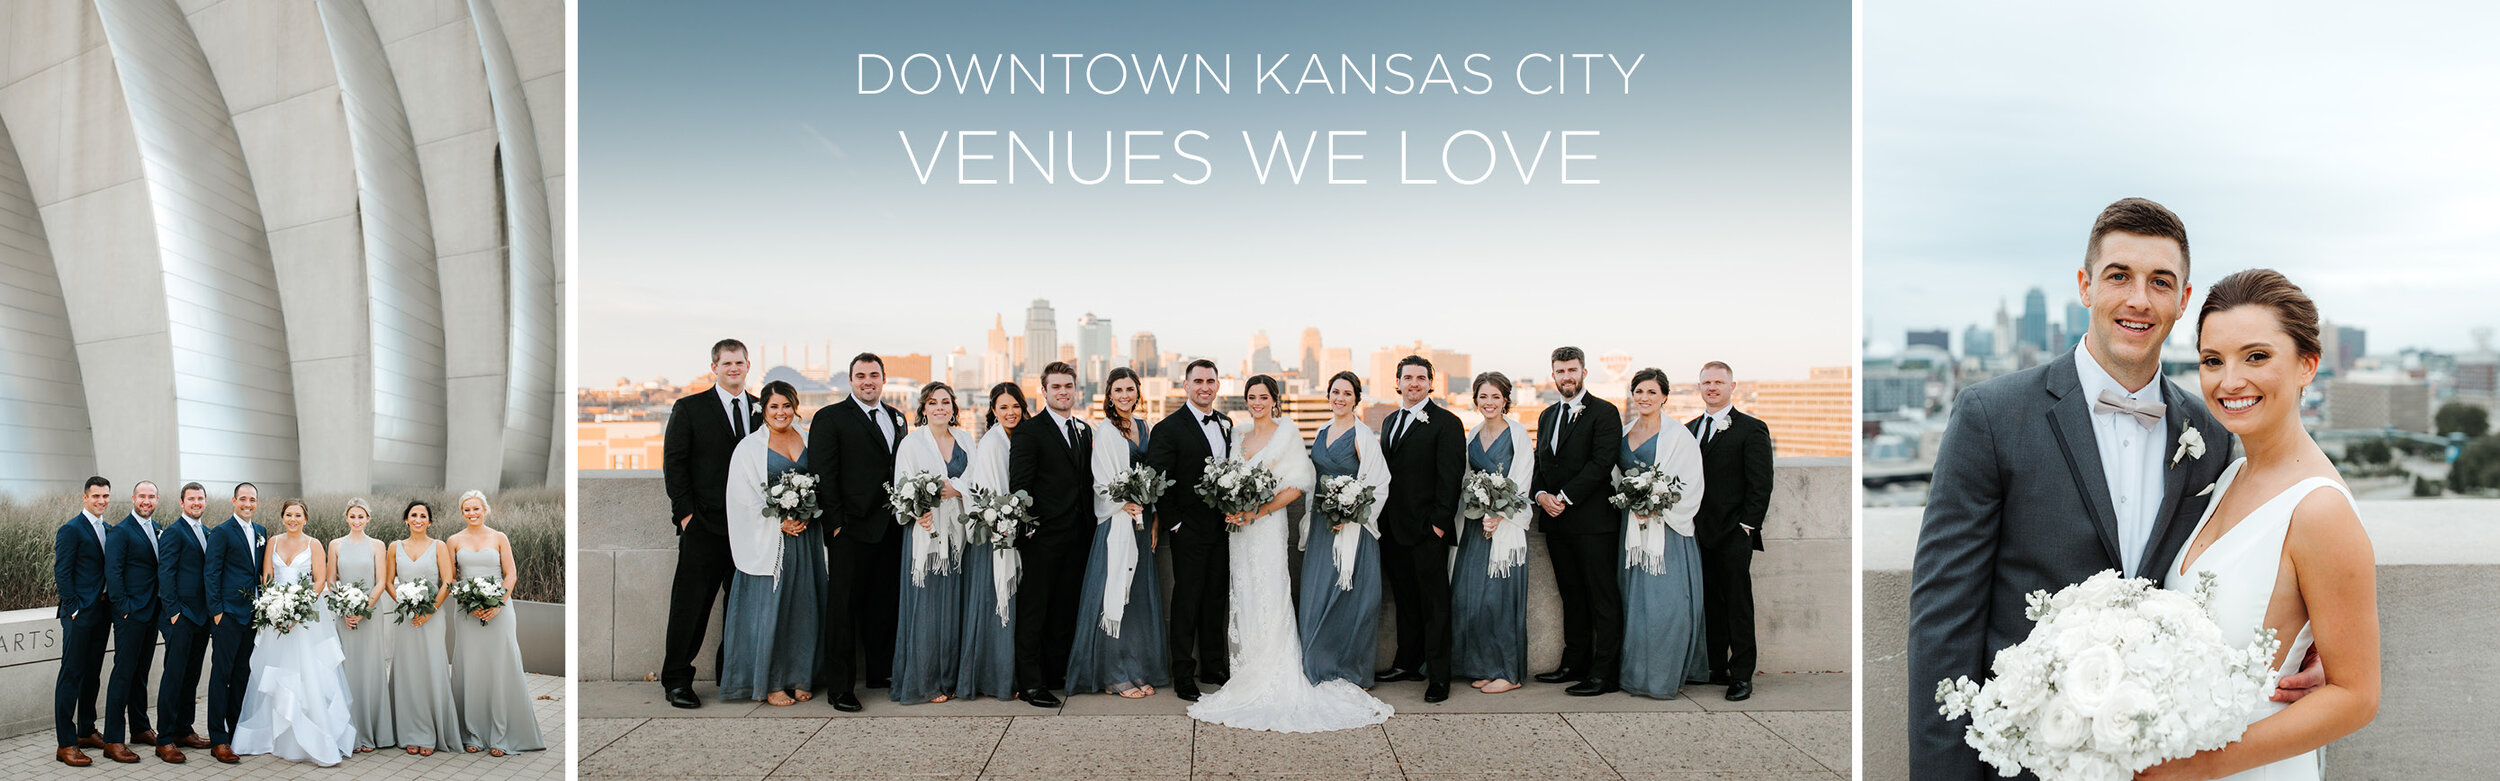 https://images.squarespace-cdn.com/content/v1/58eead3be6f2e16b6e53a052/1590153062991-CONY53V6WU89QX8PSWR7/Downtown-Kansas-City-Wedding-Venues-We-Love.jpg